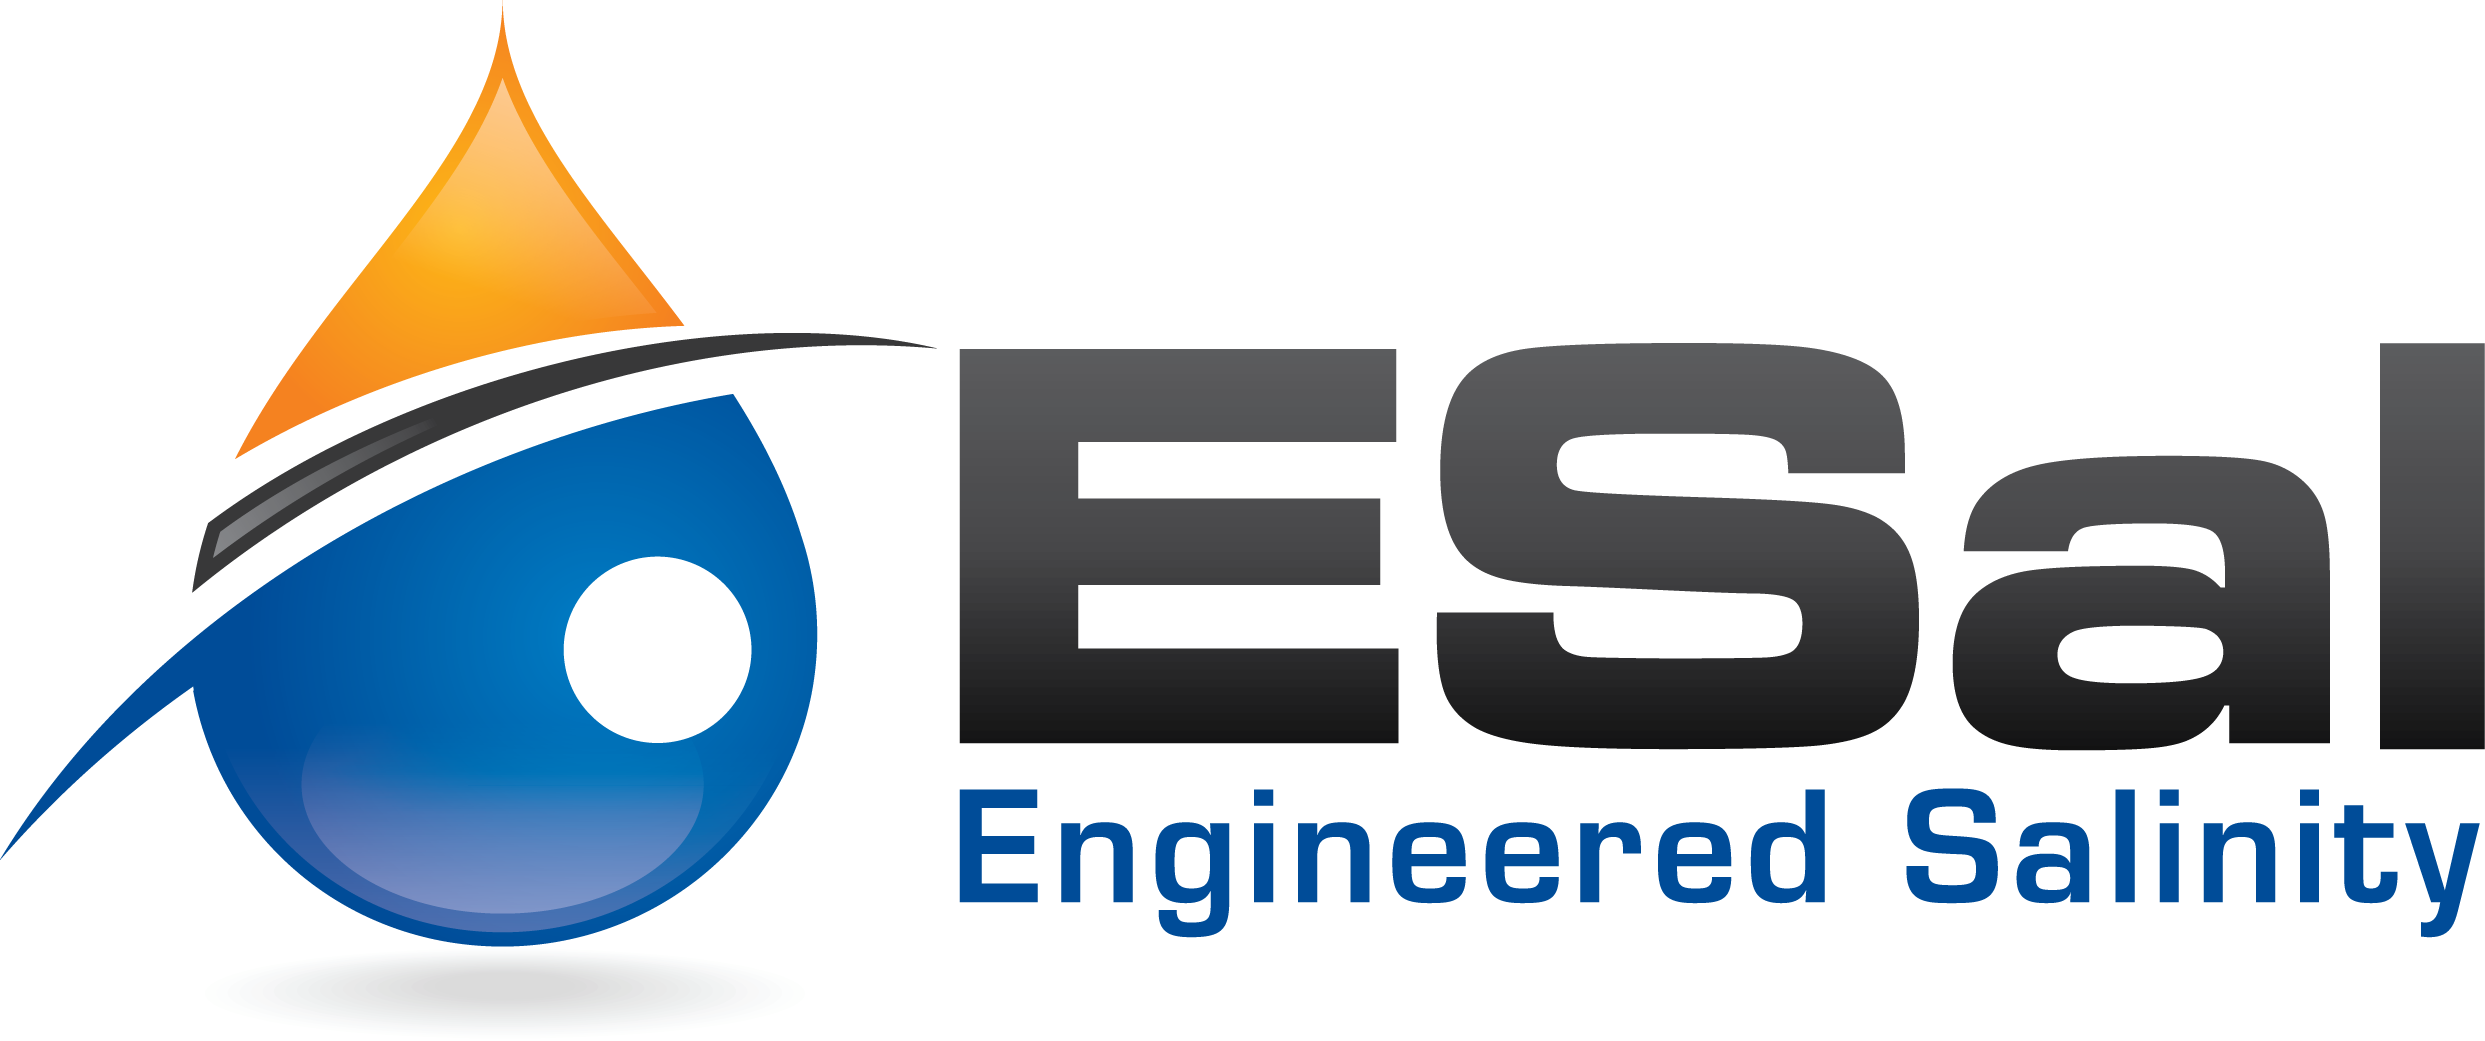 ESal Logo